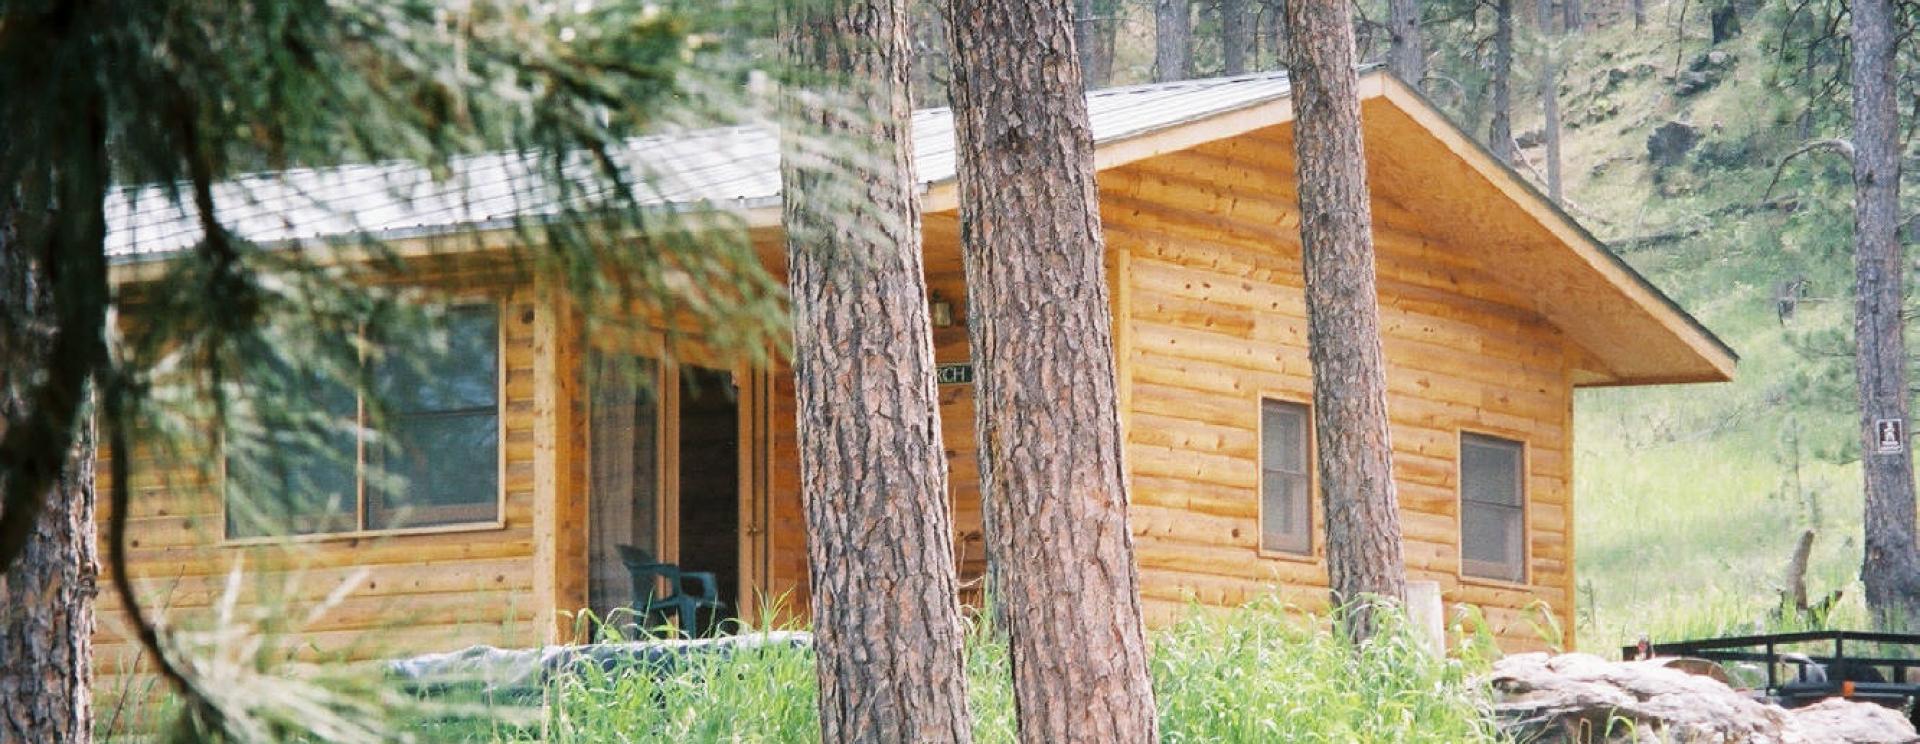 Pine Rest Cabins